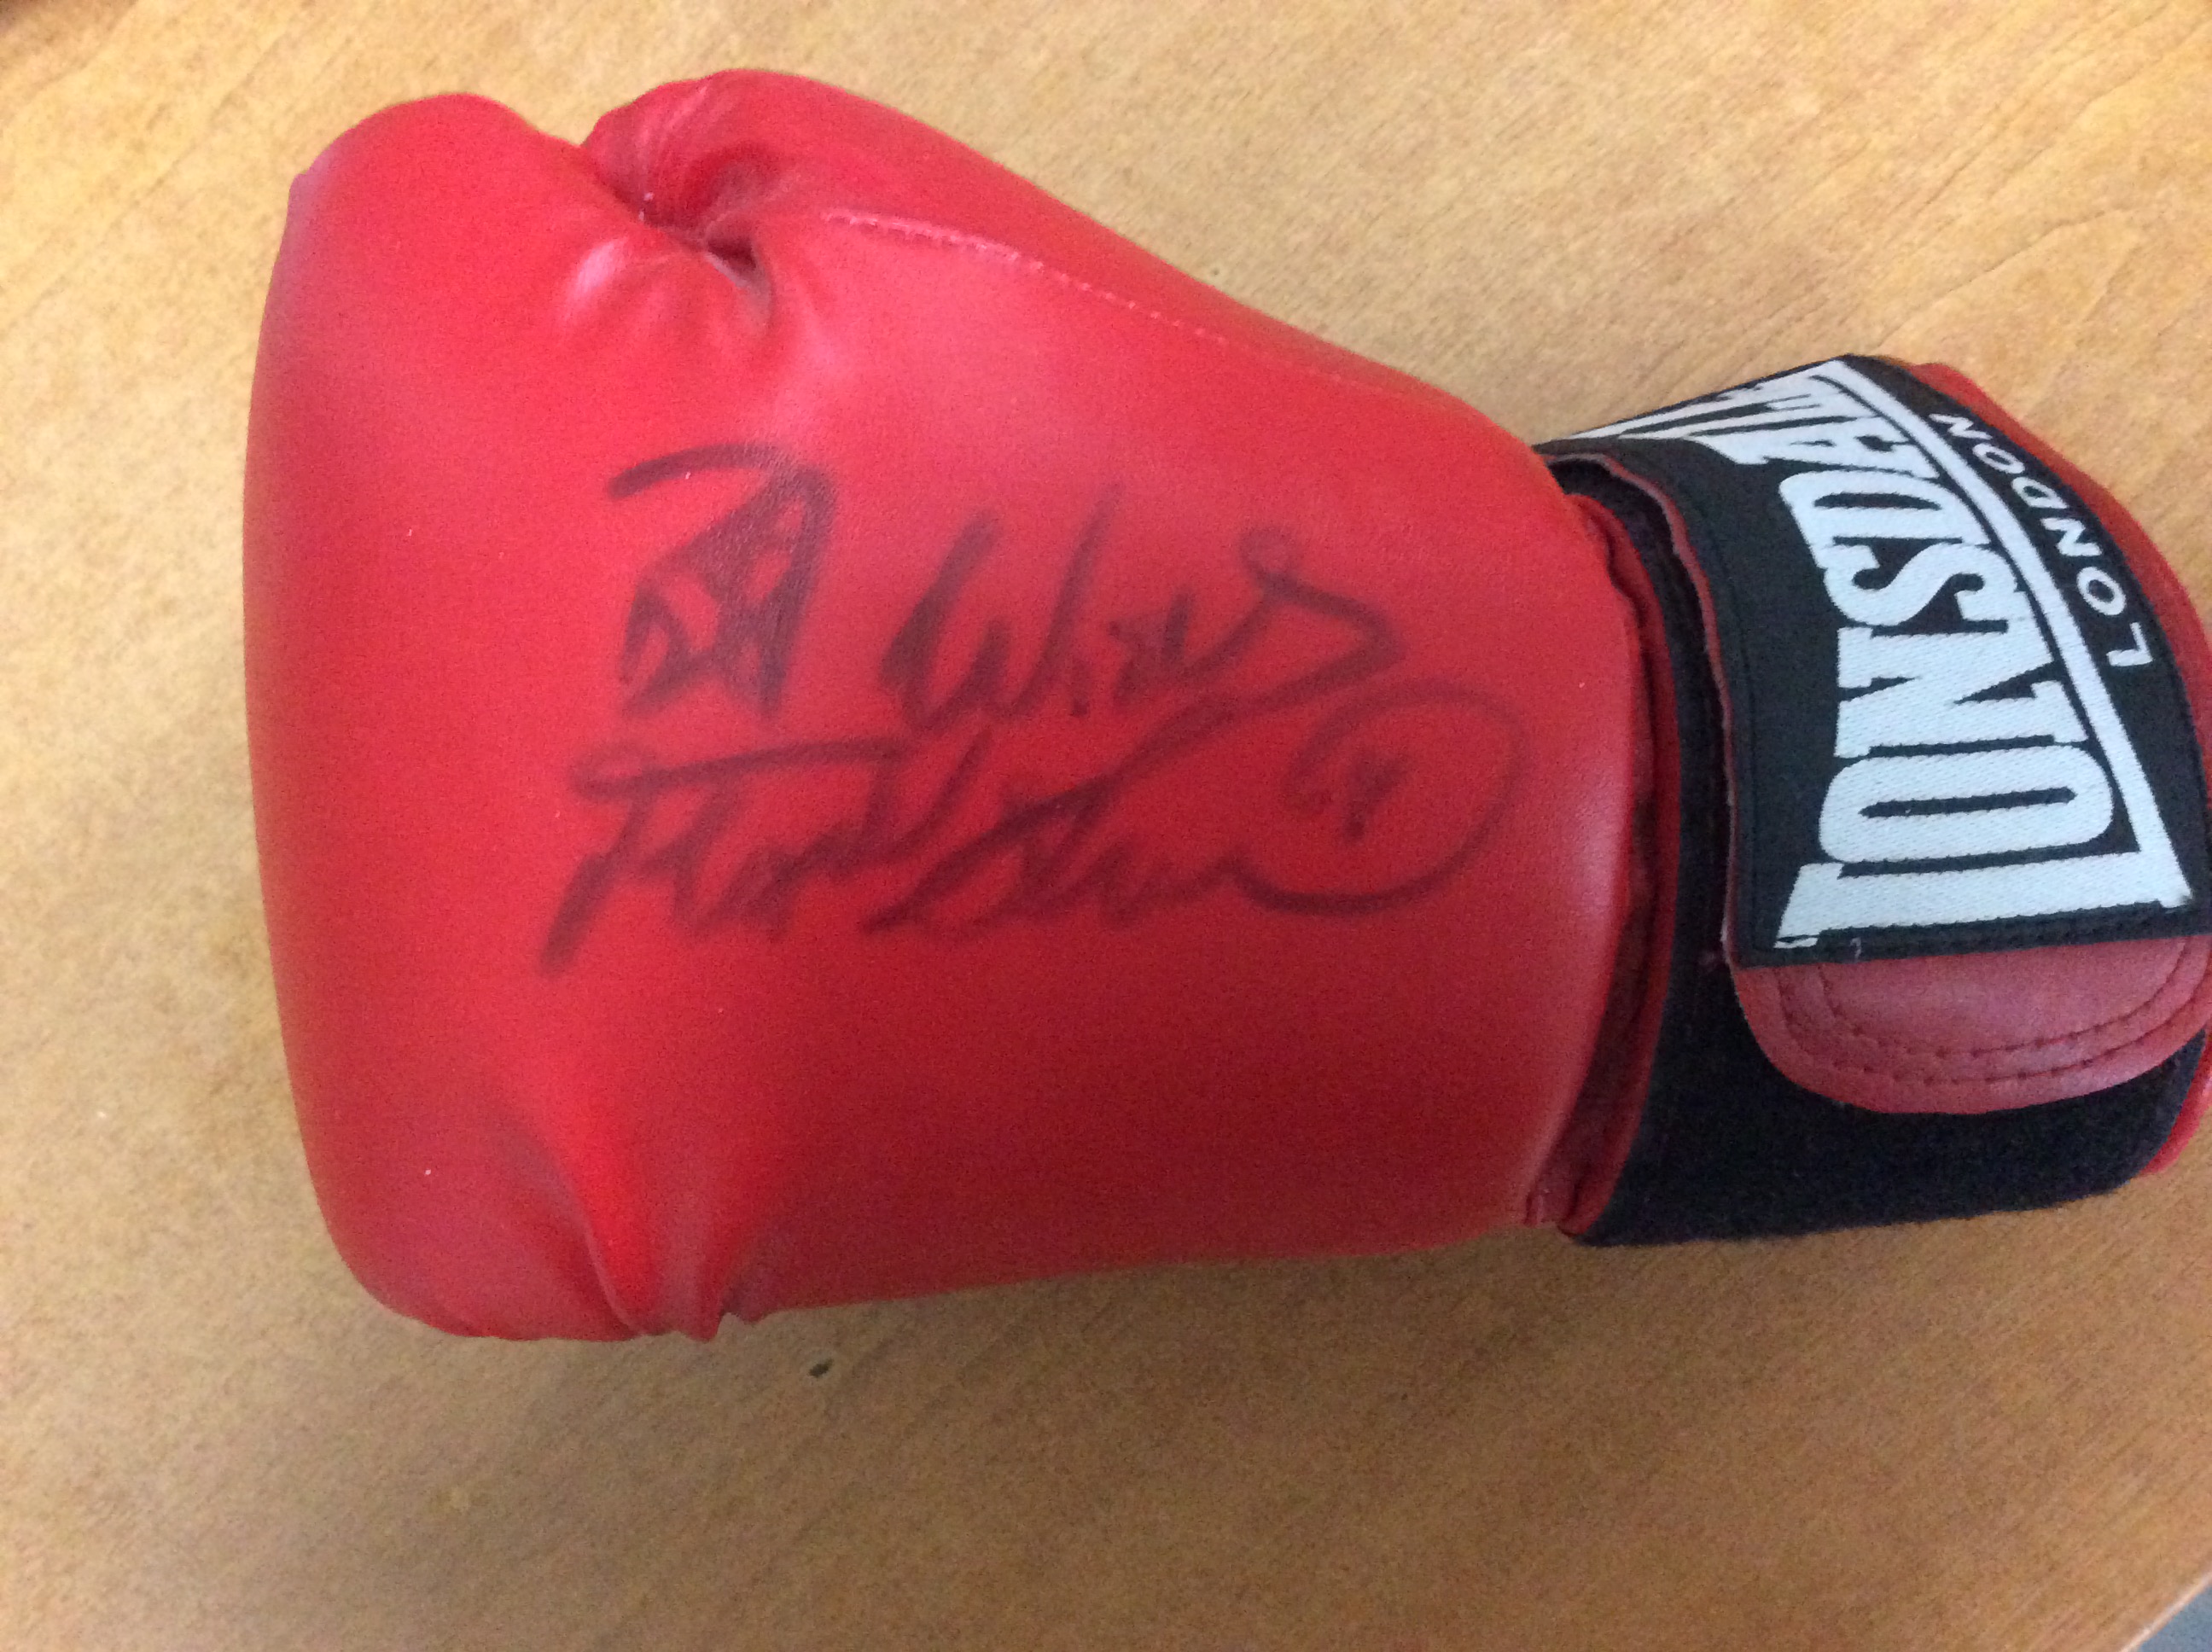 Frank Bruno Signed Glove - Image 3 of 3